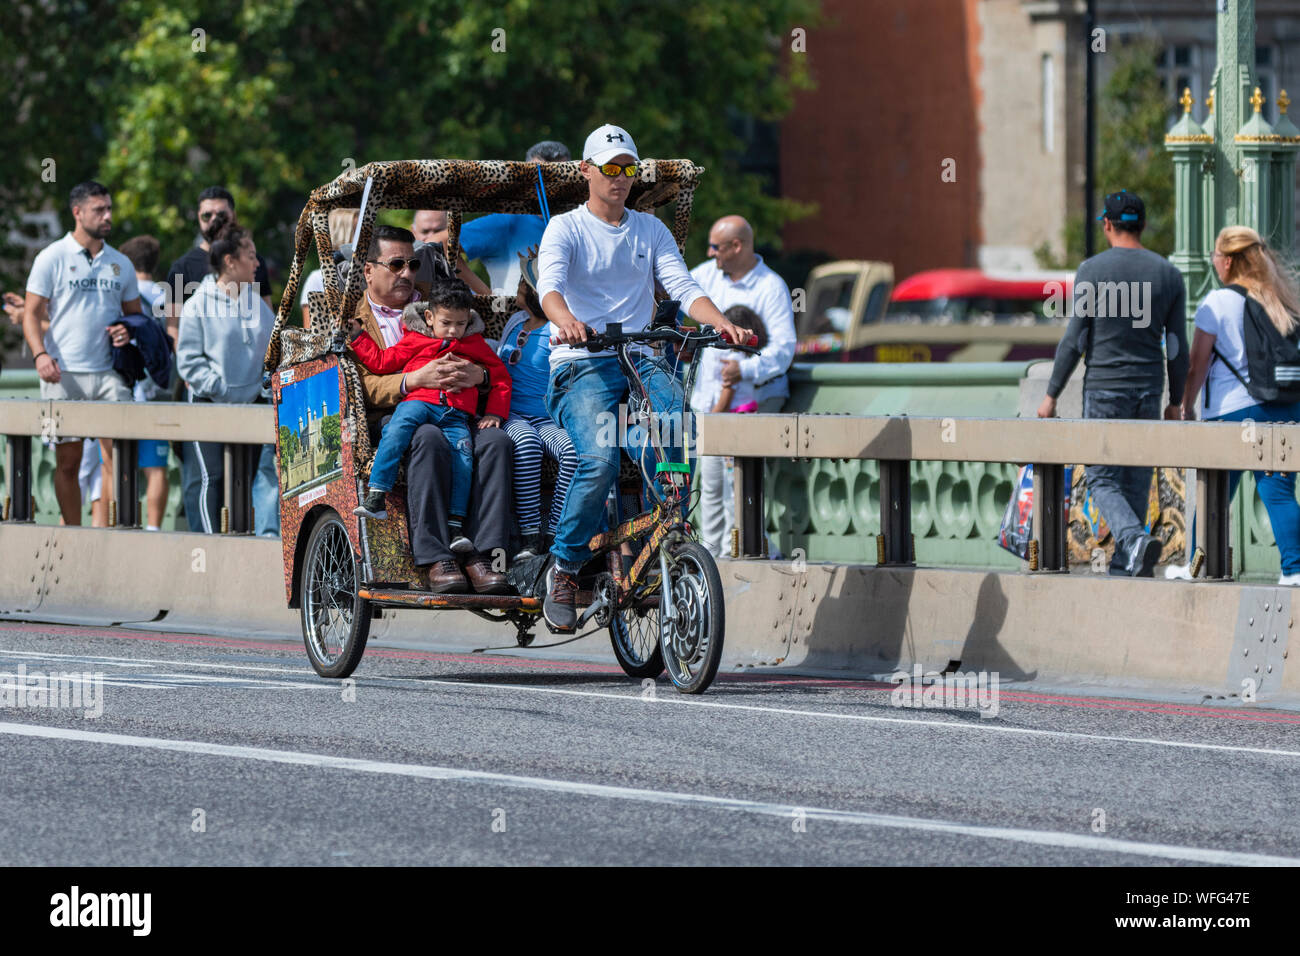 Les touristes comme les passagers sur un trajet touristique dans un pousse-pousse 3 roues ou Pedicab sur Westminster Bridge dans City of London, England, UK. Banque D'Images